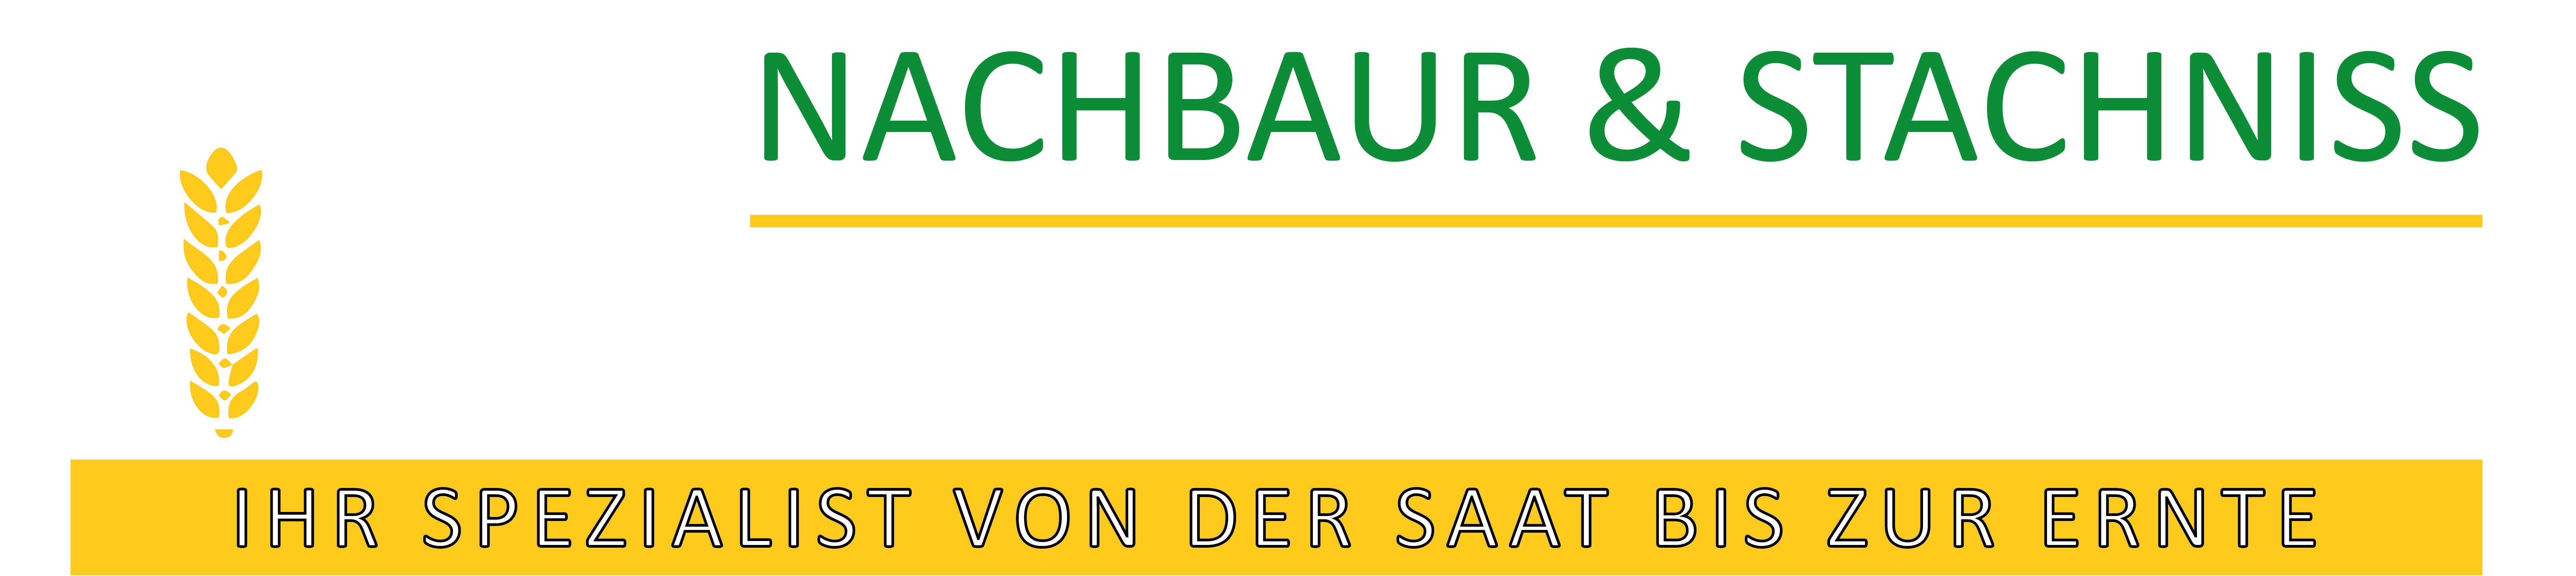 Agrarservice Nachbaur & Stachniss